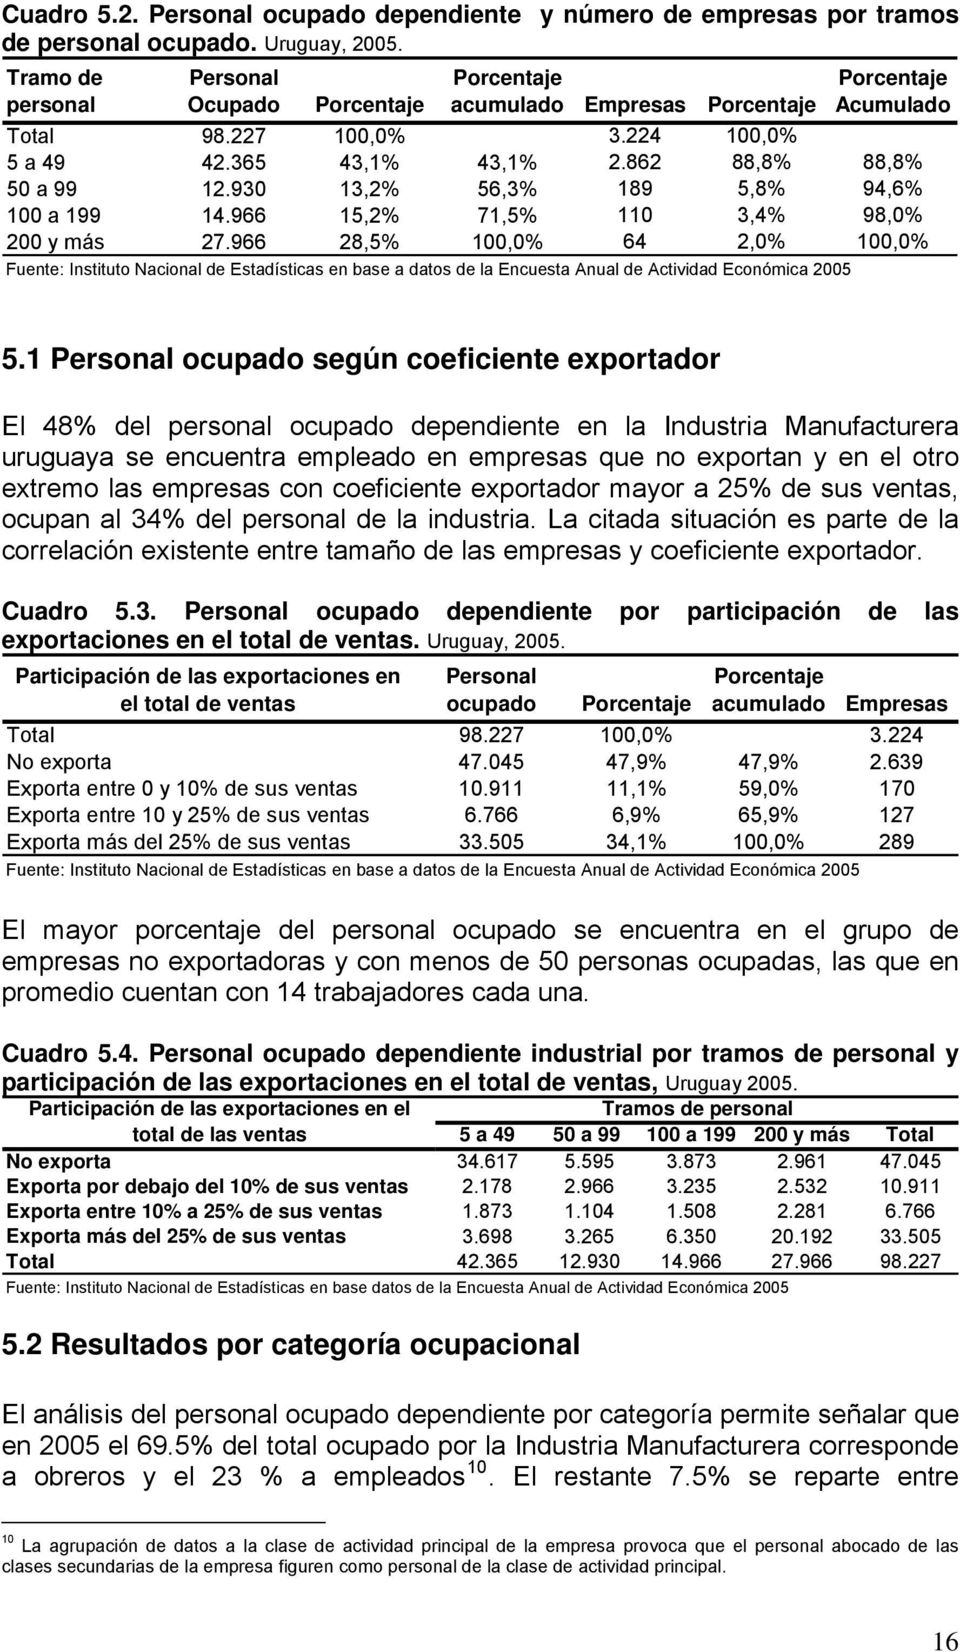 1 Personal ocupado según coeficiente exportador El 48% del personal ocupado dependiente en la Industria Manufacturera uruguaya se encuentra empleado en empresas que no exportan y en el otro extremo